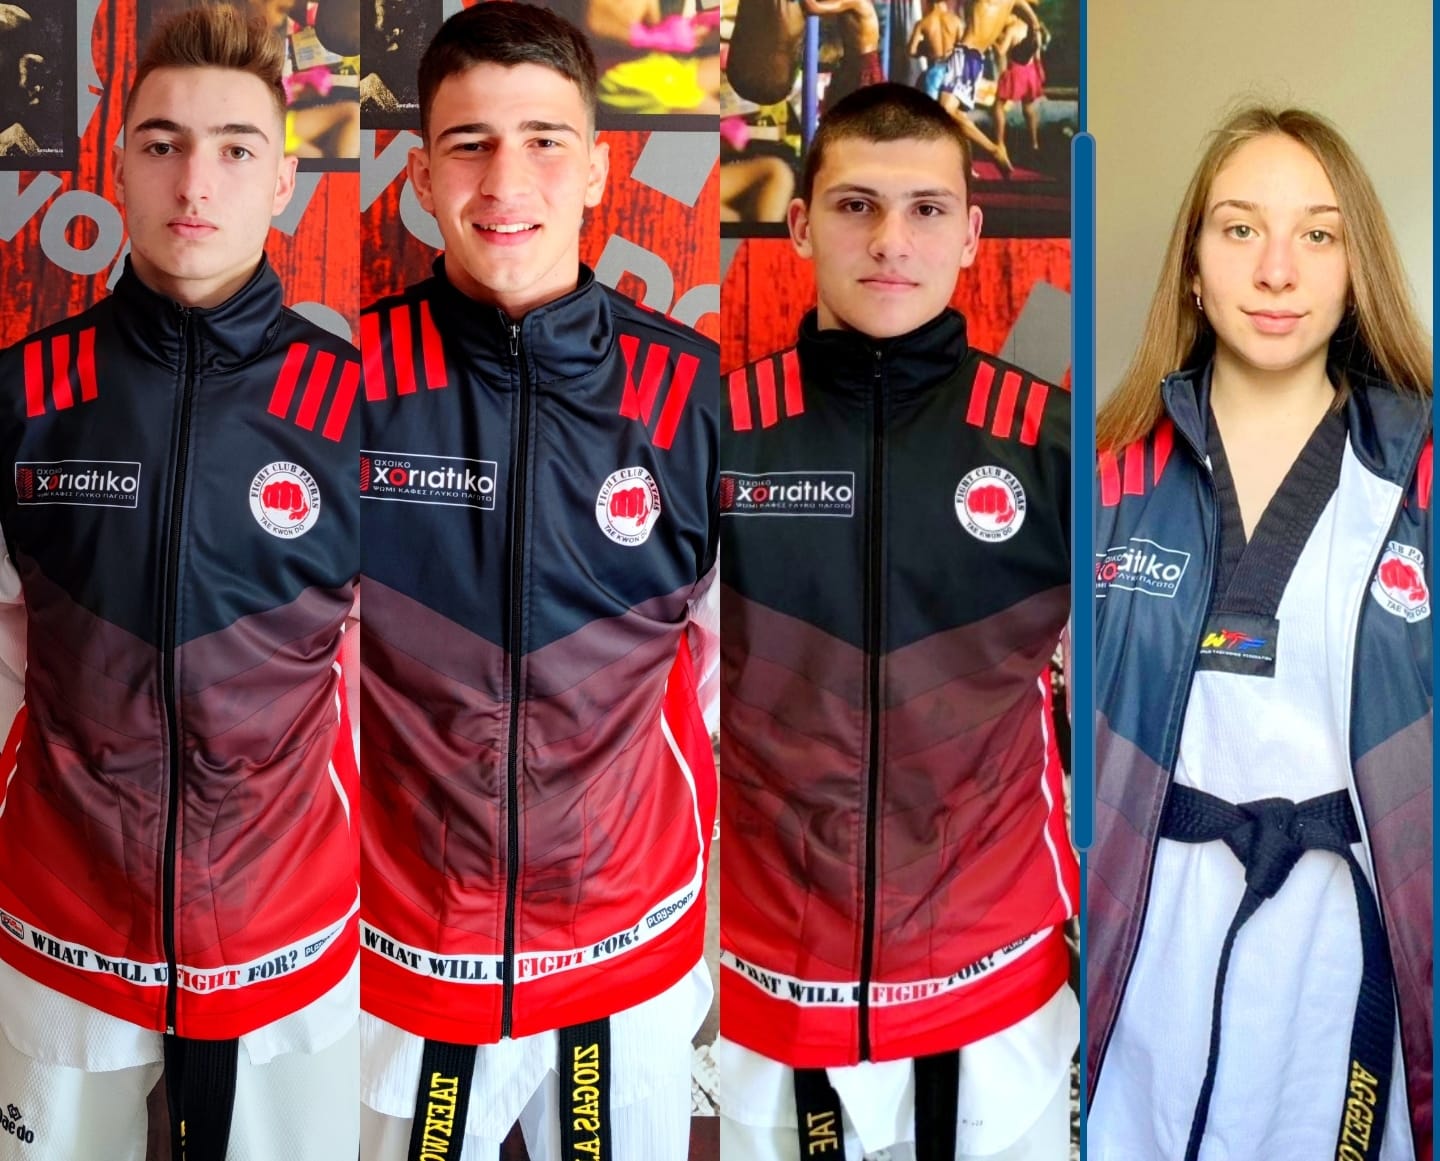 Το Fight club  με 4 αθλητές στο Πανελλήνιο σχολικό πρωτάθλημα